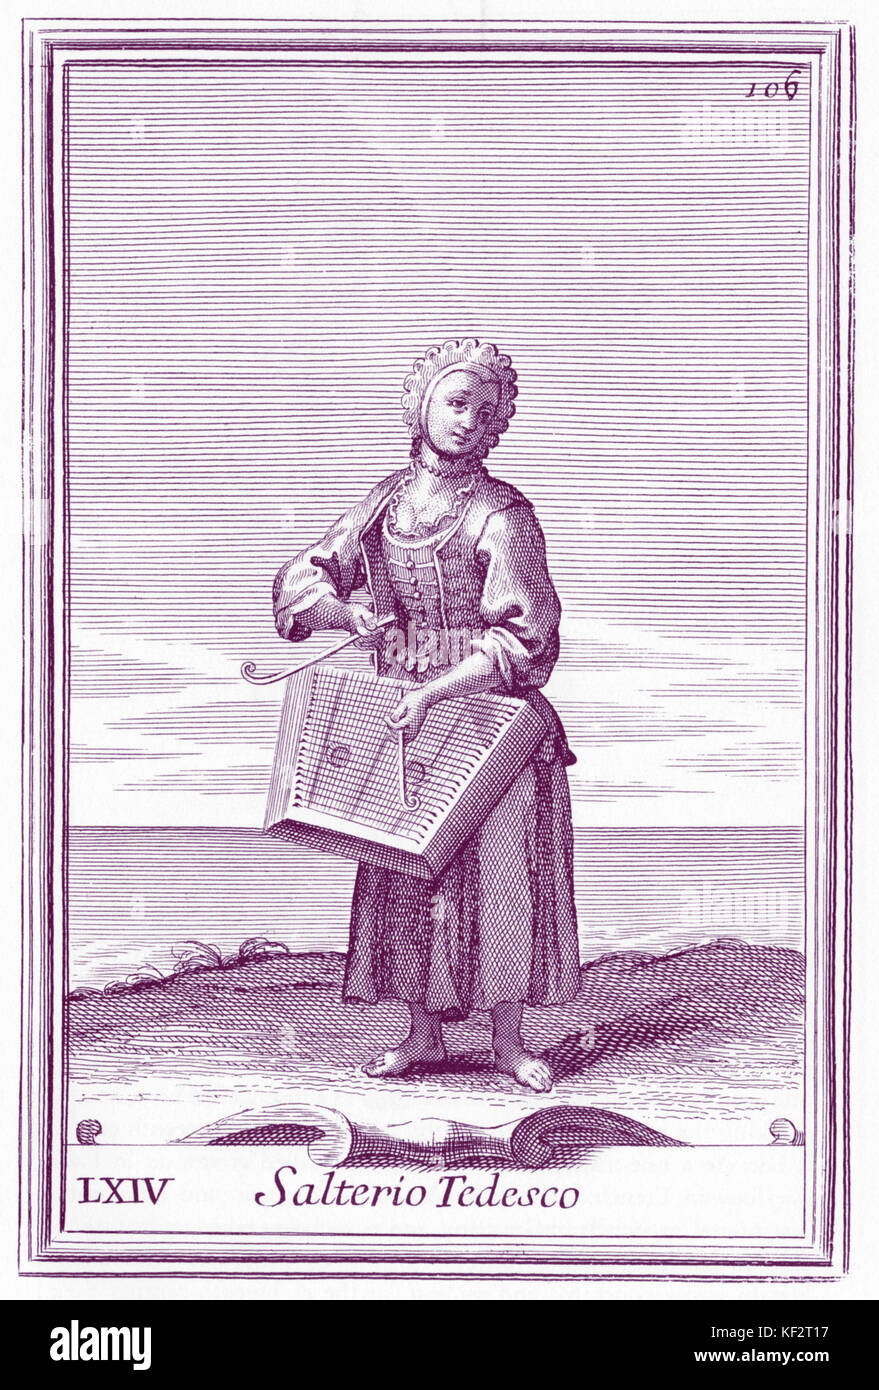 Musicista di cembalo salterio tedesco (tedesco il salterio) da Bonanni 'Gabinetto Armonico" pubblicata nel 1723. Incisione di Arnold van Westerhout. Illustrazione 64 Foto Stock